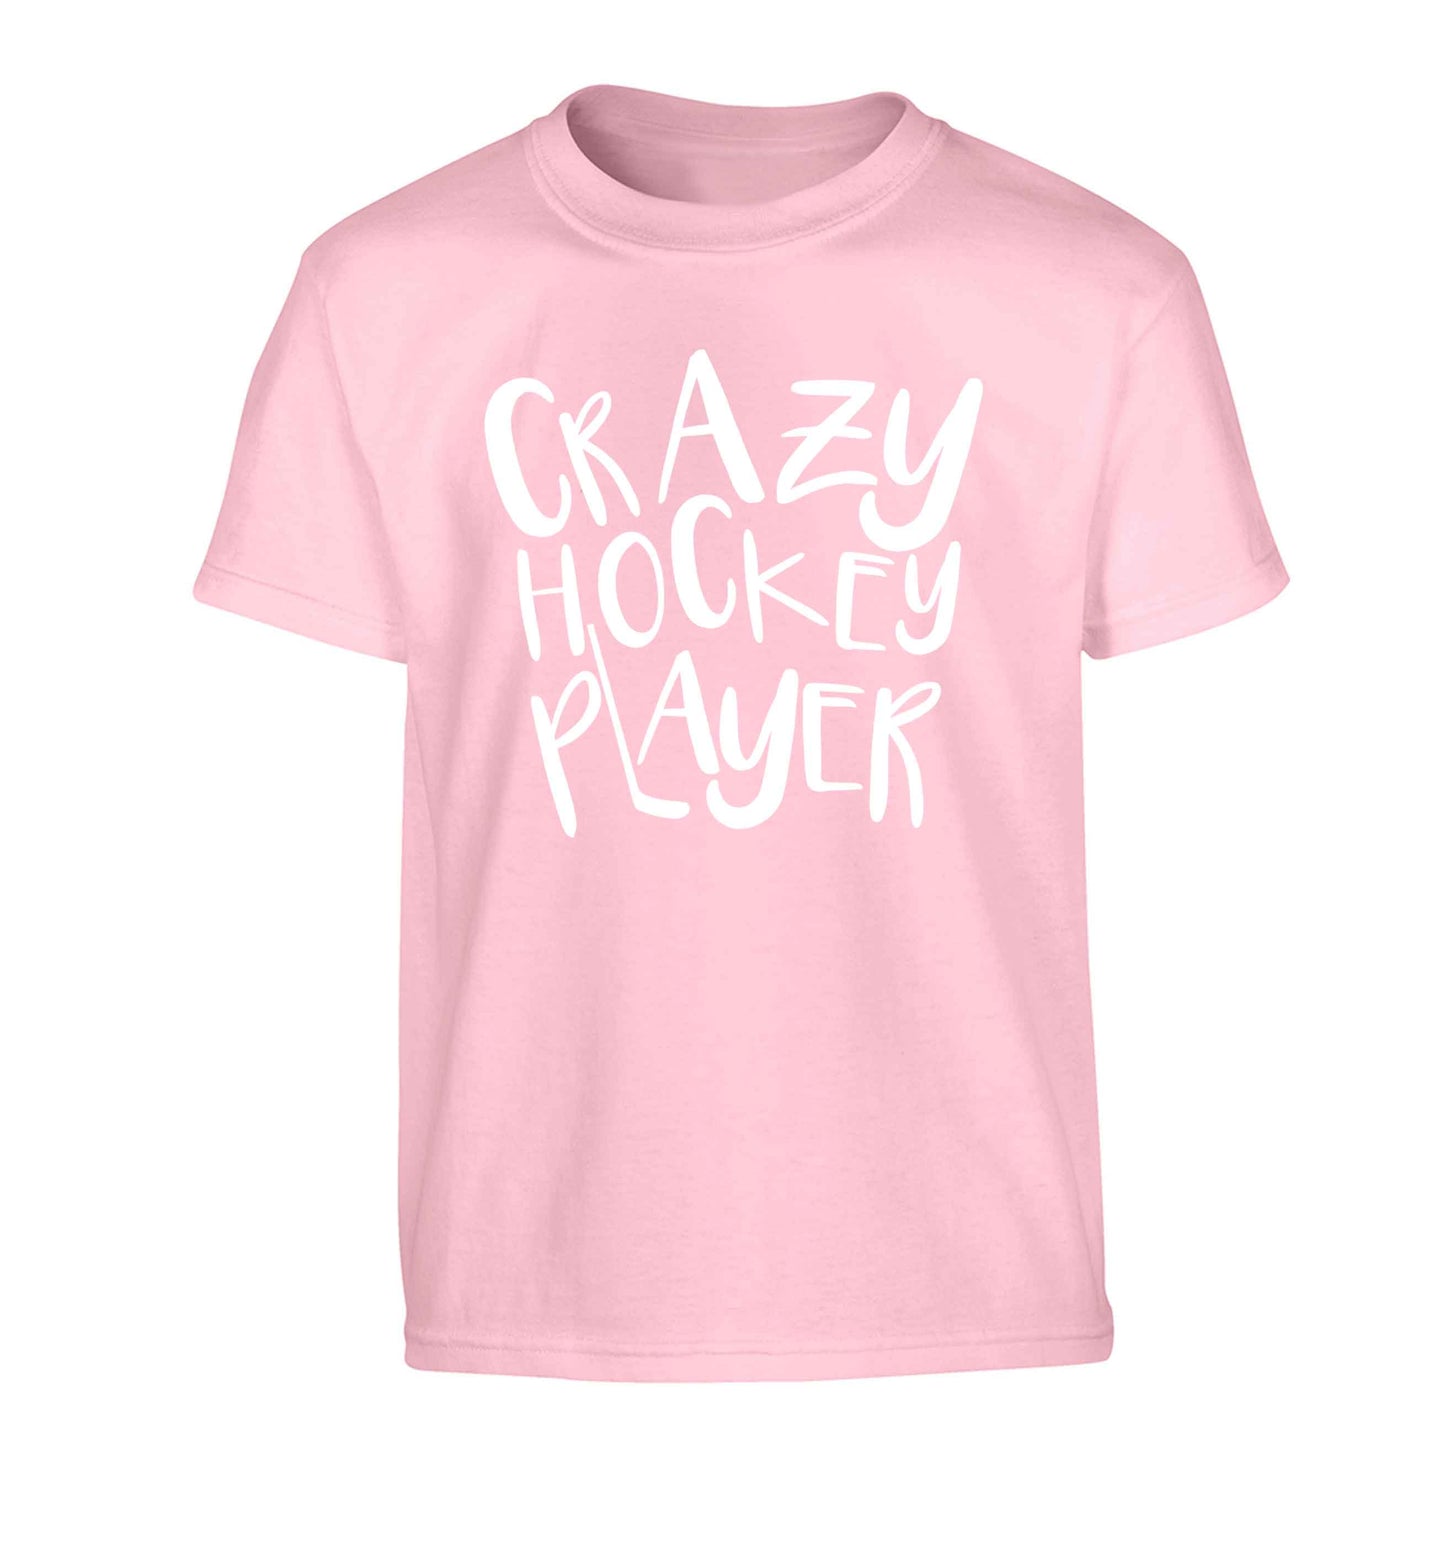 Crazy hockey player Children's light pink Tshirt 12-13 Years